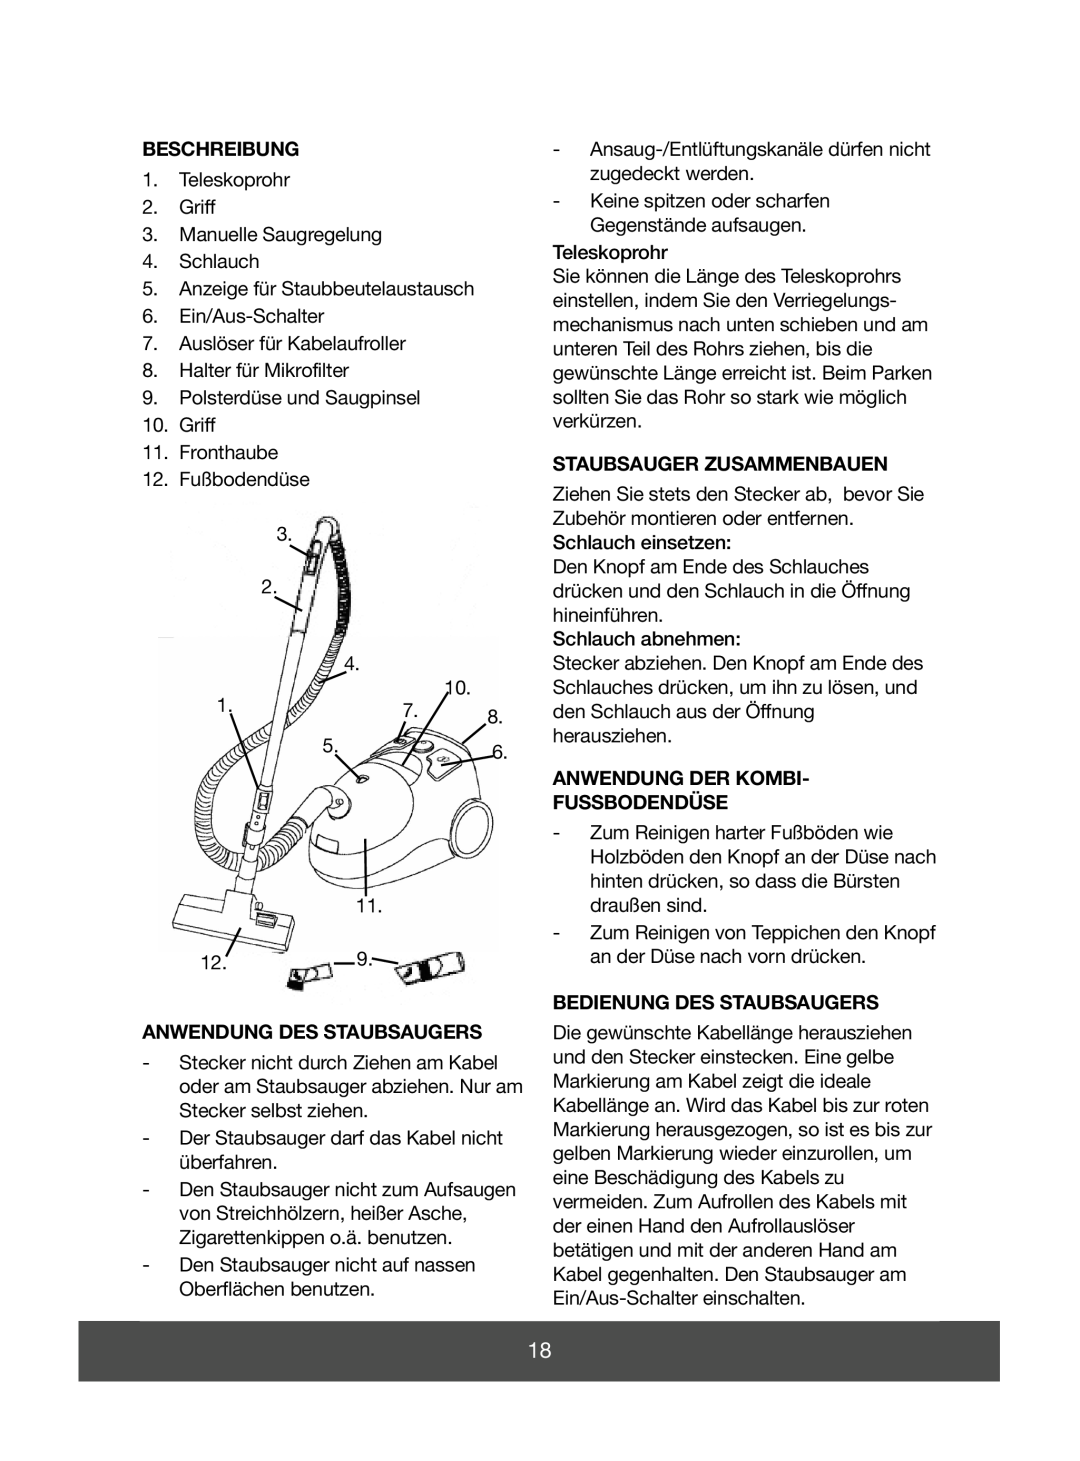 Melissa 640-070 Beschreibung, Anwendung Des Staubsaugers, Staubsauger Zusammenbauen, Anwendung Der Kombi Fussbodendüse 